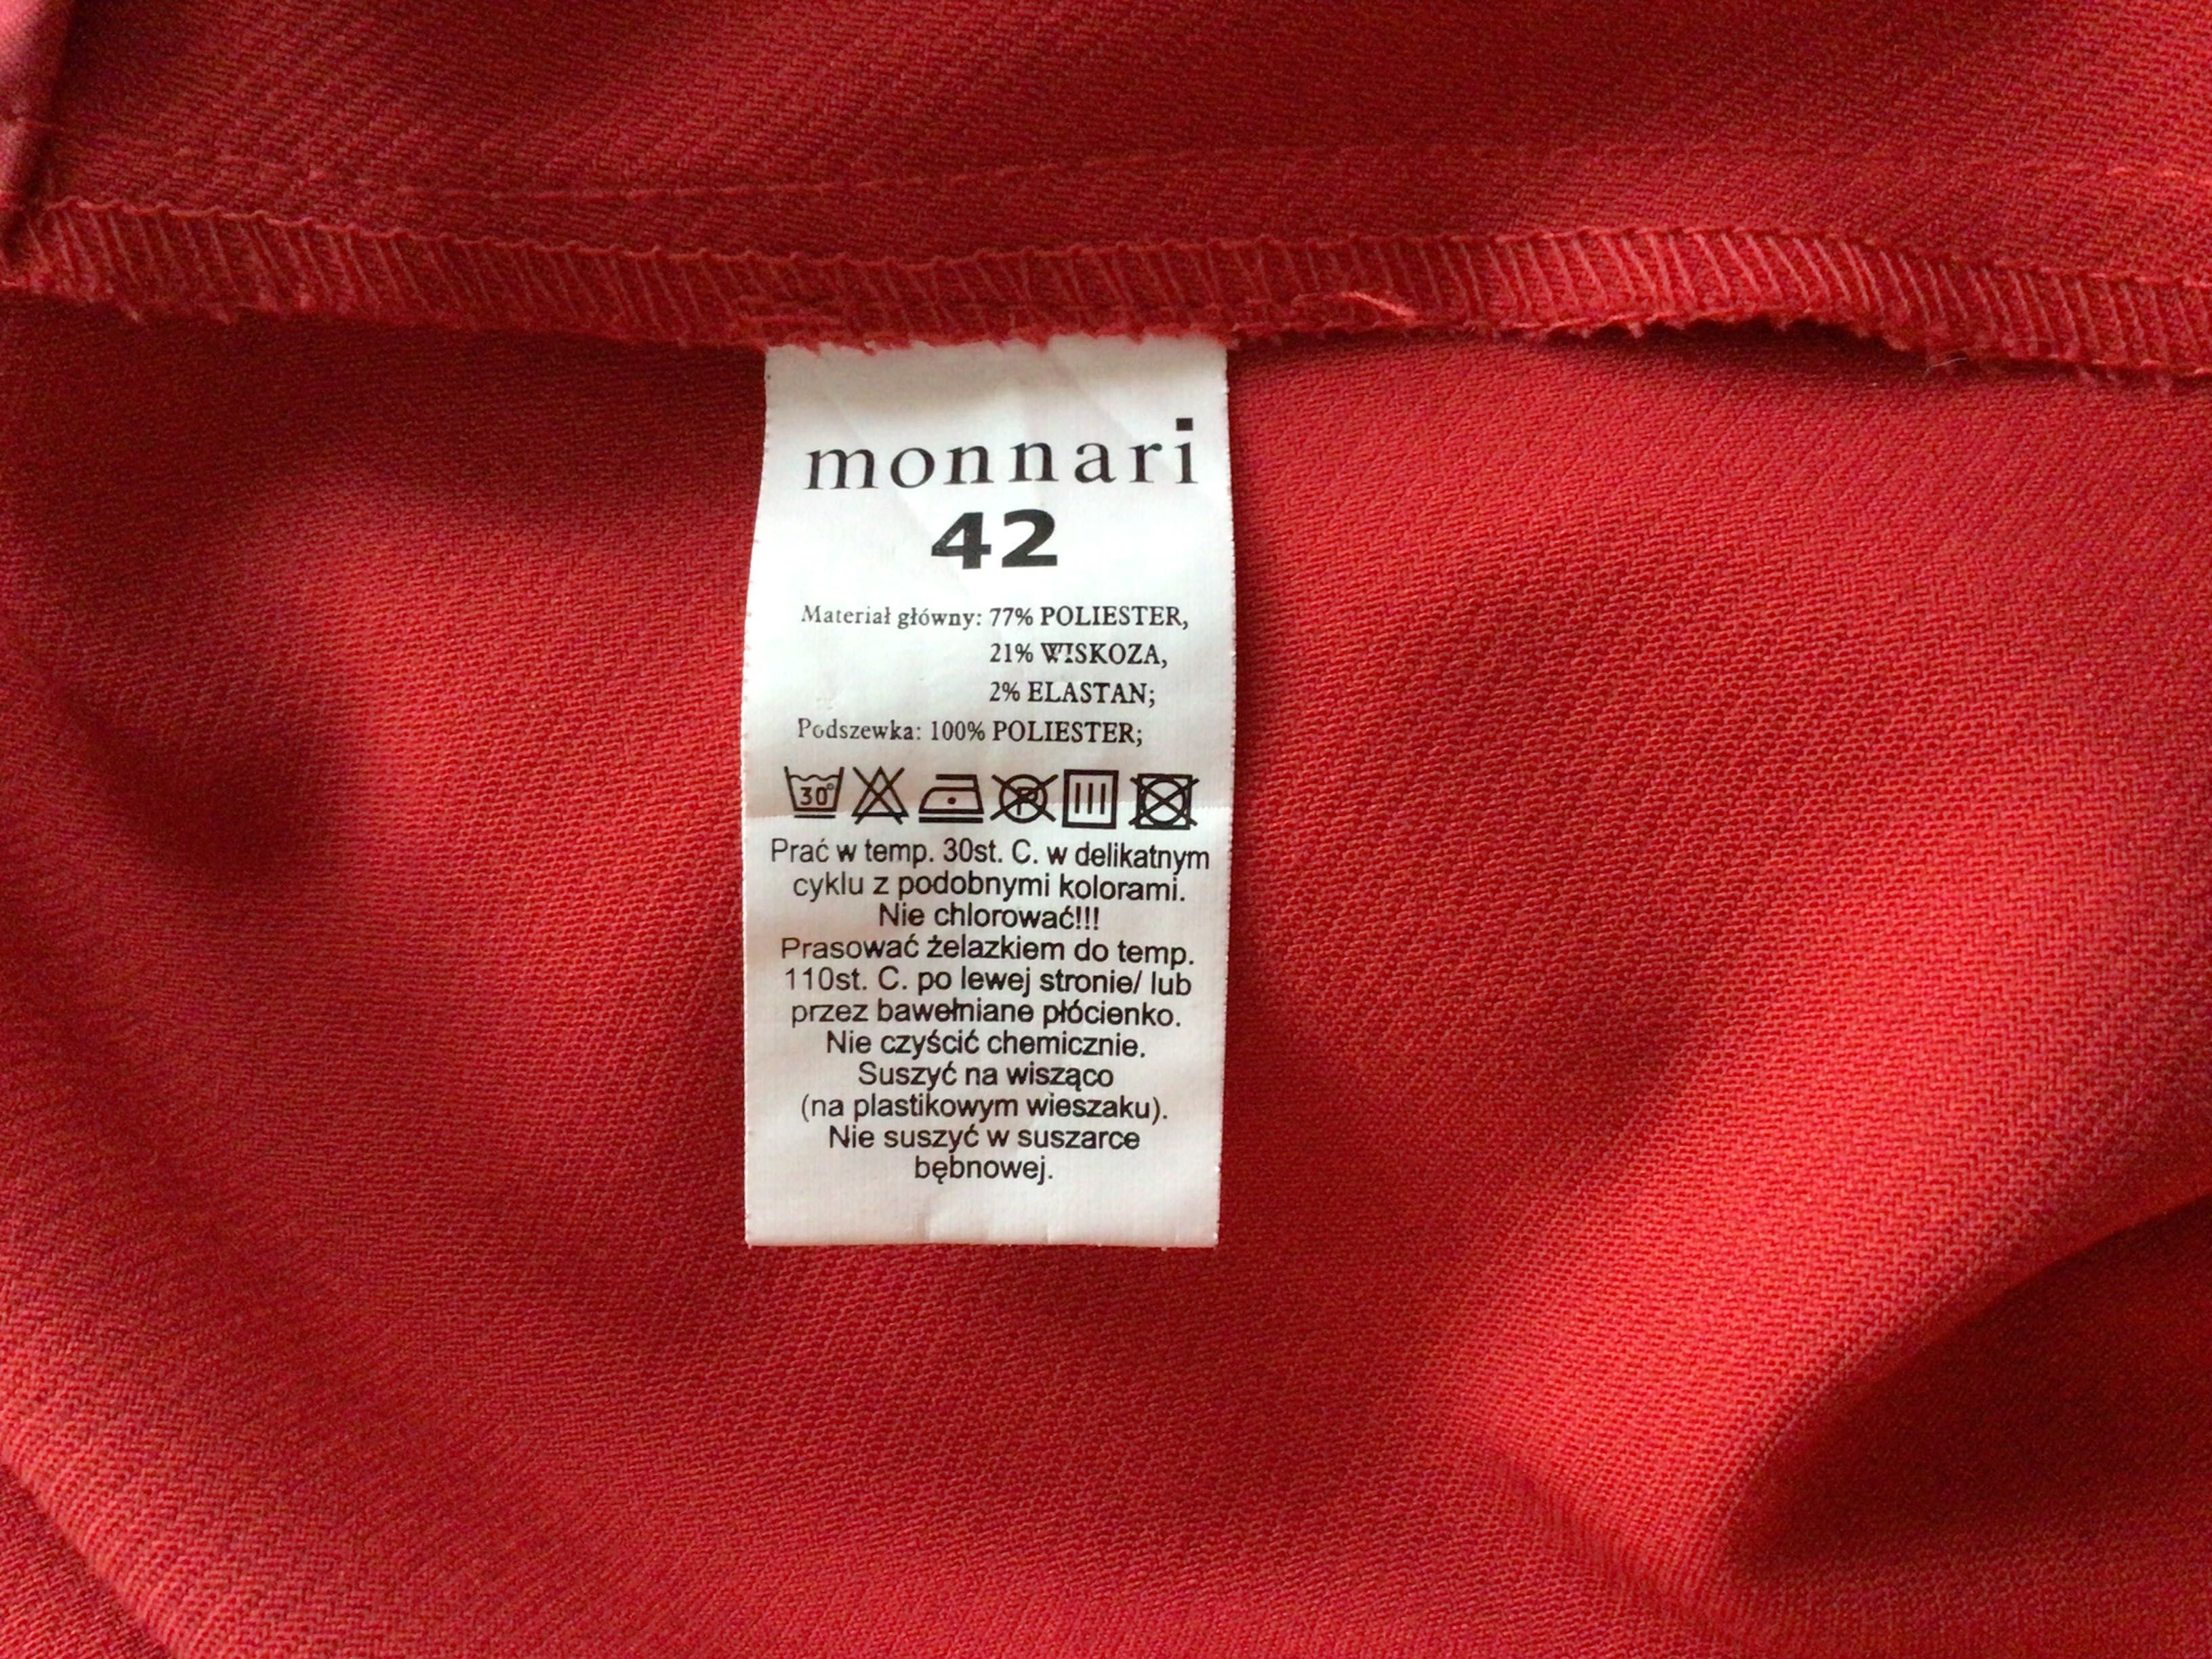 Czerwone klasyczne spodnie z kantem (Monnari)